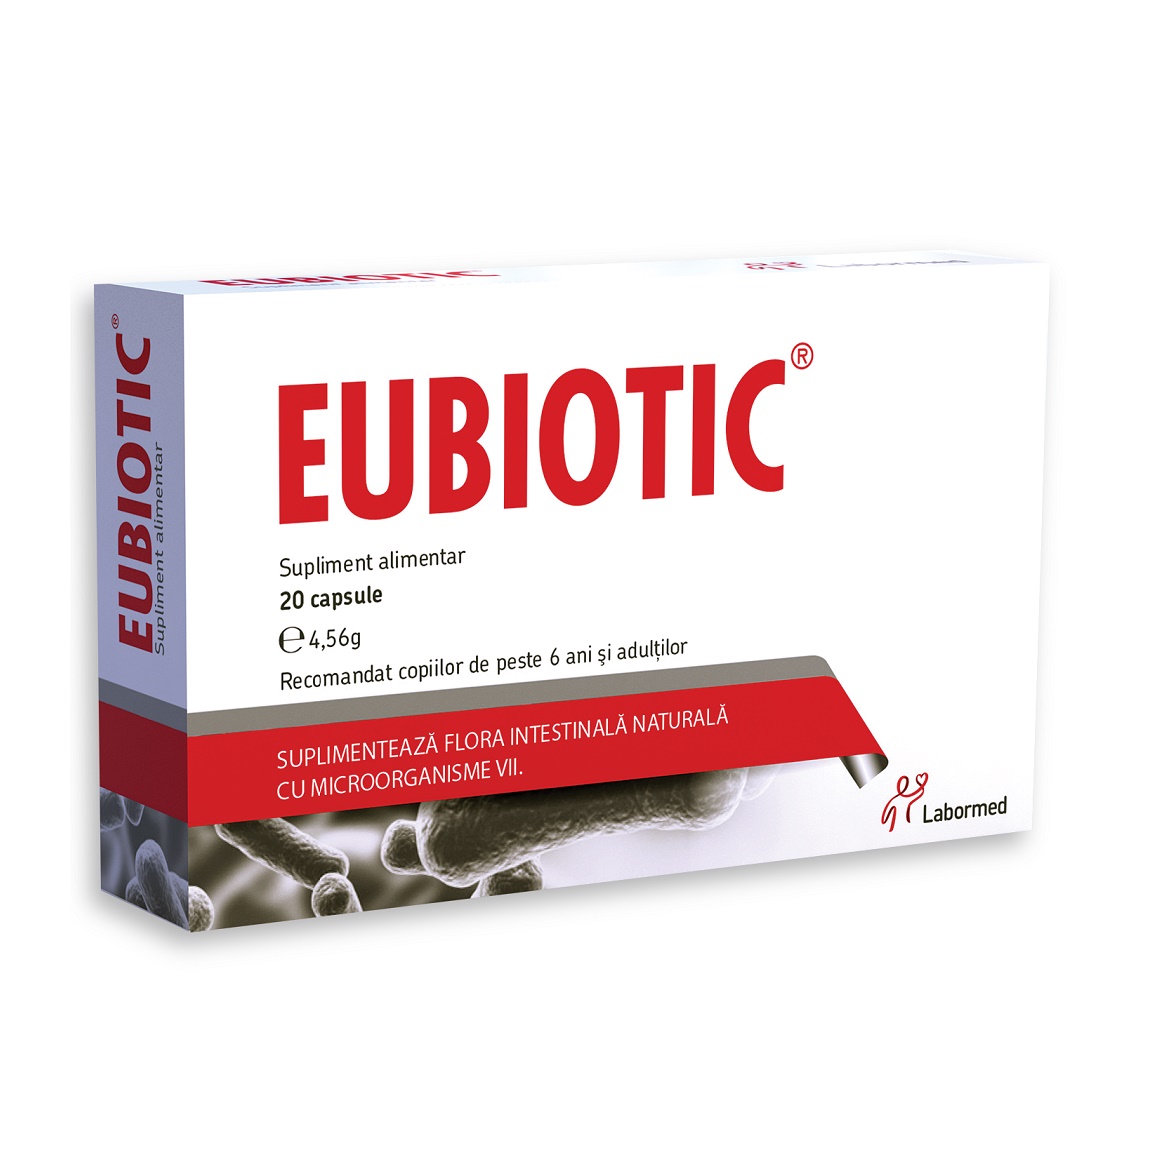 EUBIOTIC 20 CAPSULE Eubiotic